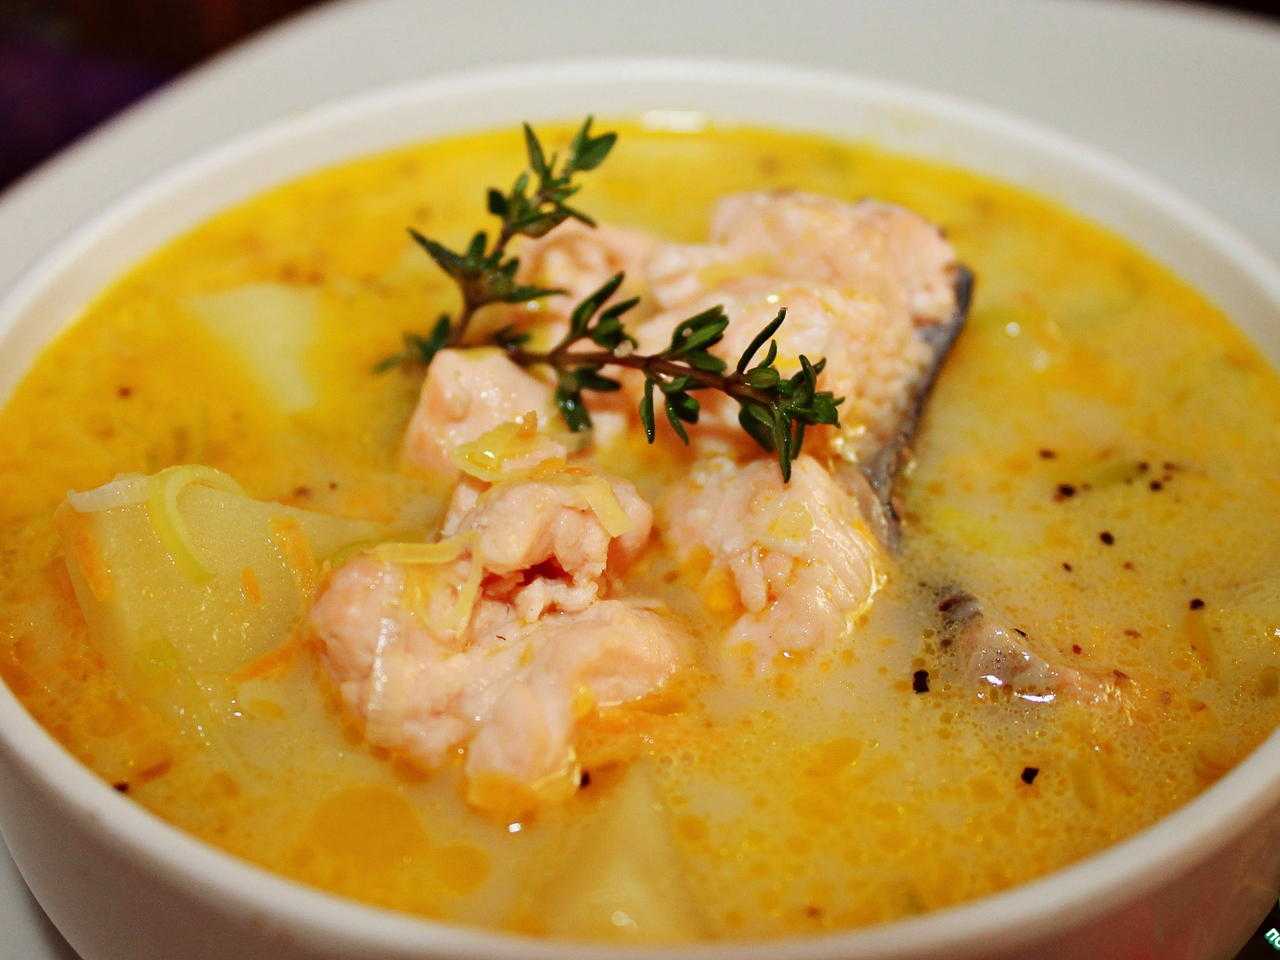 Рецепт рыбного супа со сливками высоцкой